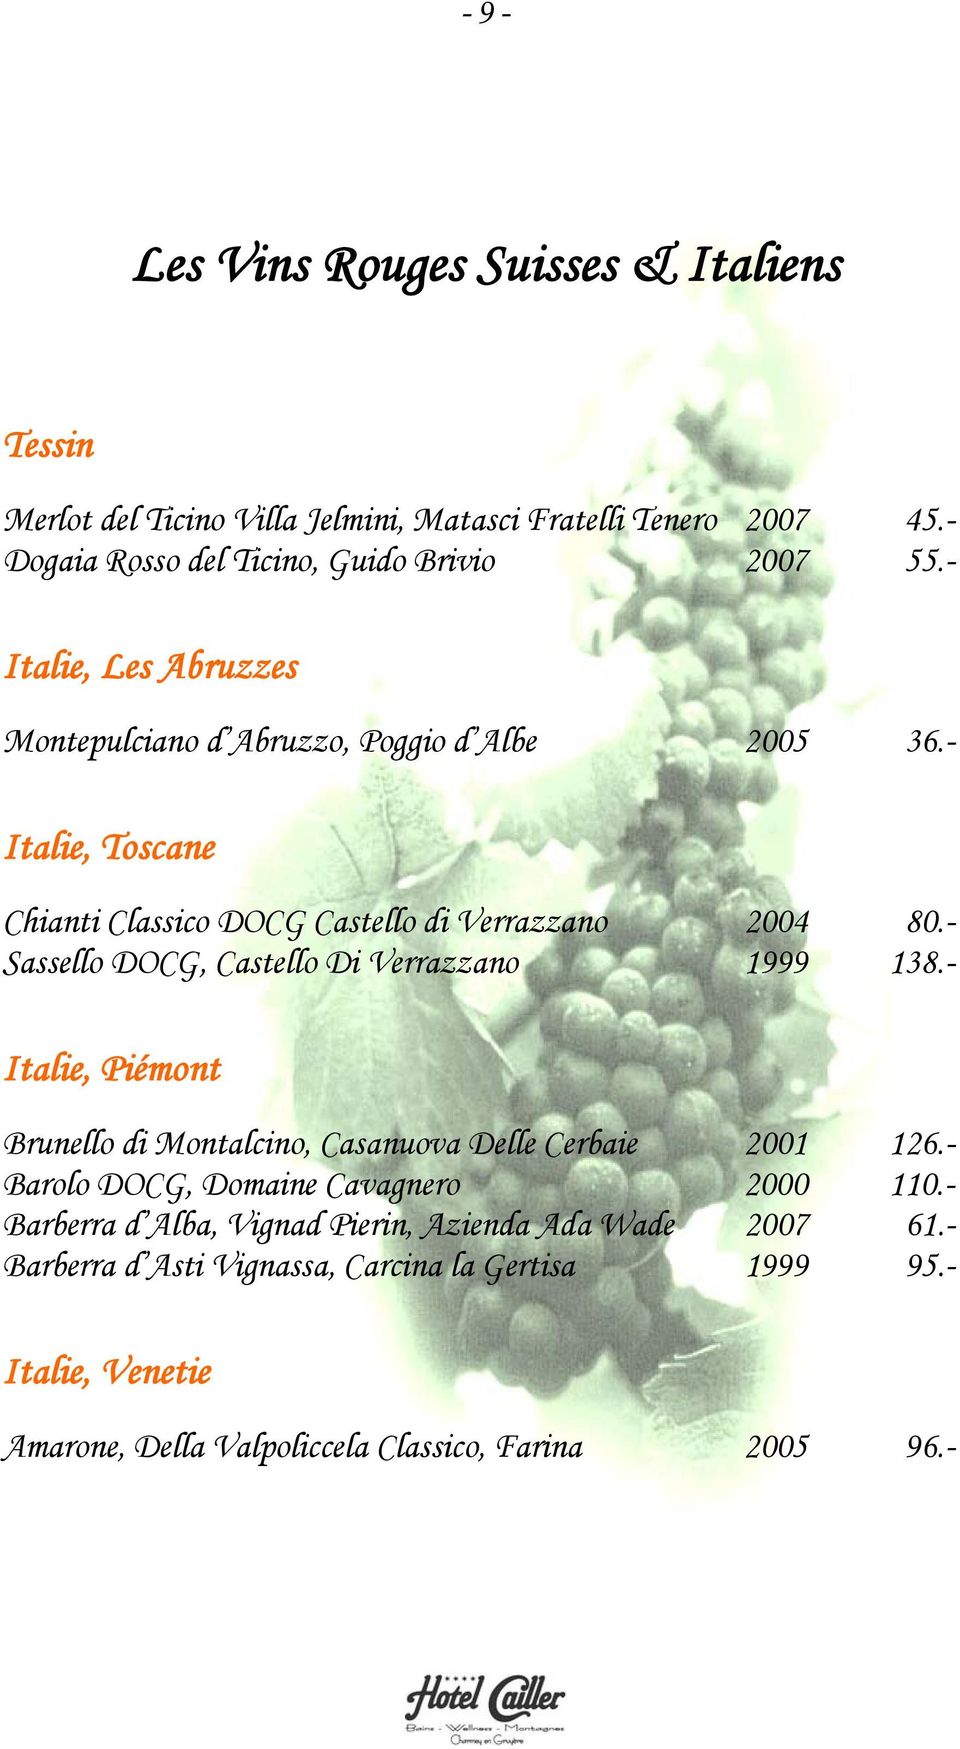 - Sassello DOCG, Castello Di Verrazzano 1999 138.- Italie, Piémont Brunello di Montalcino, Casanuova Delle Cerbaie 2001 126.